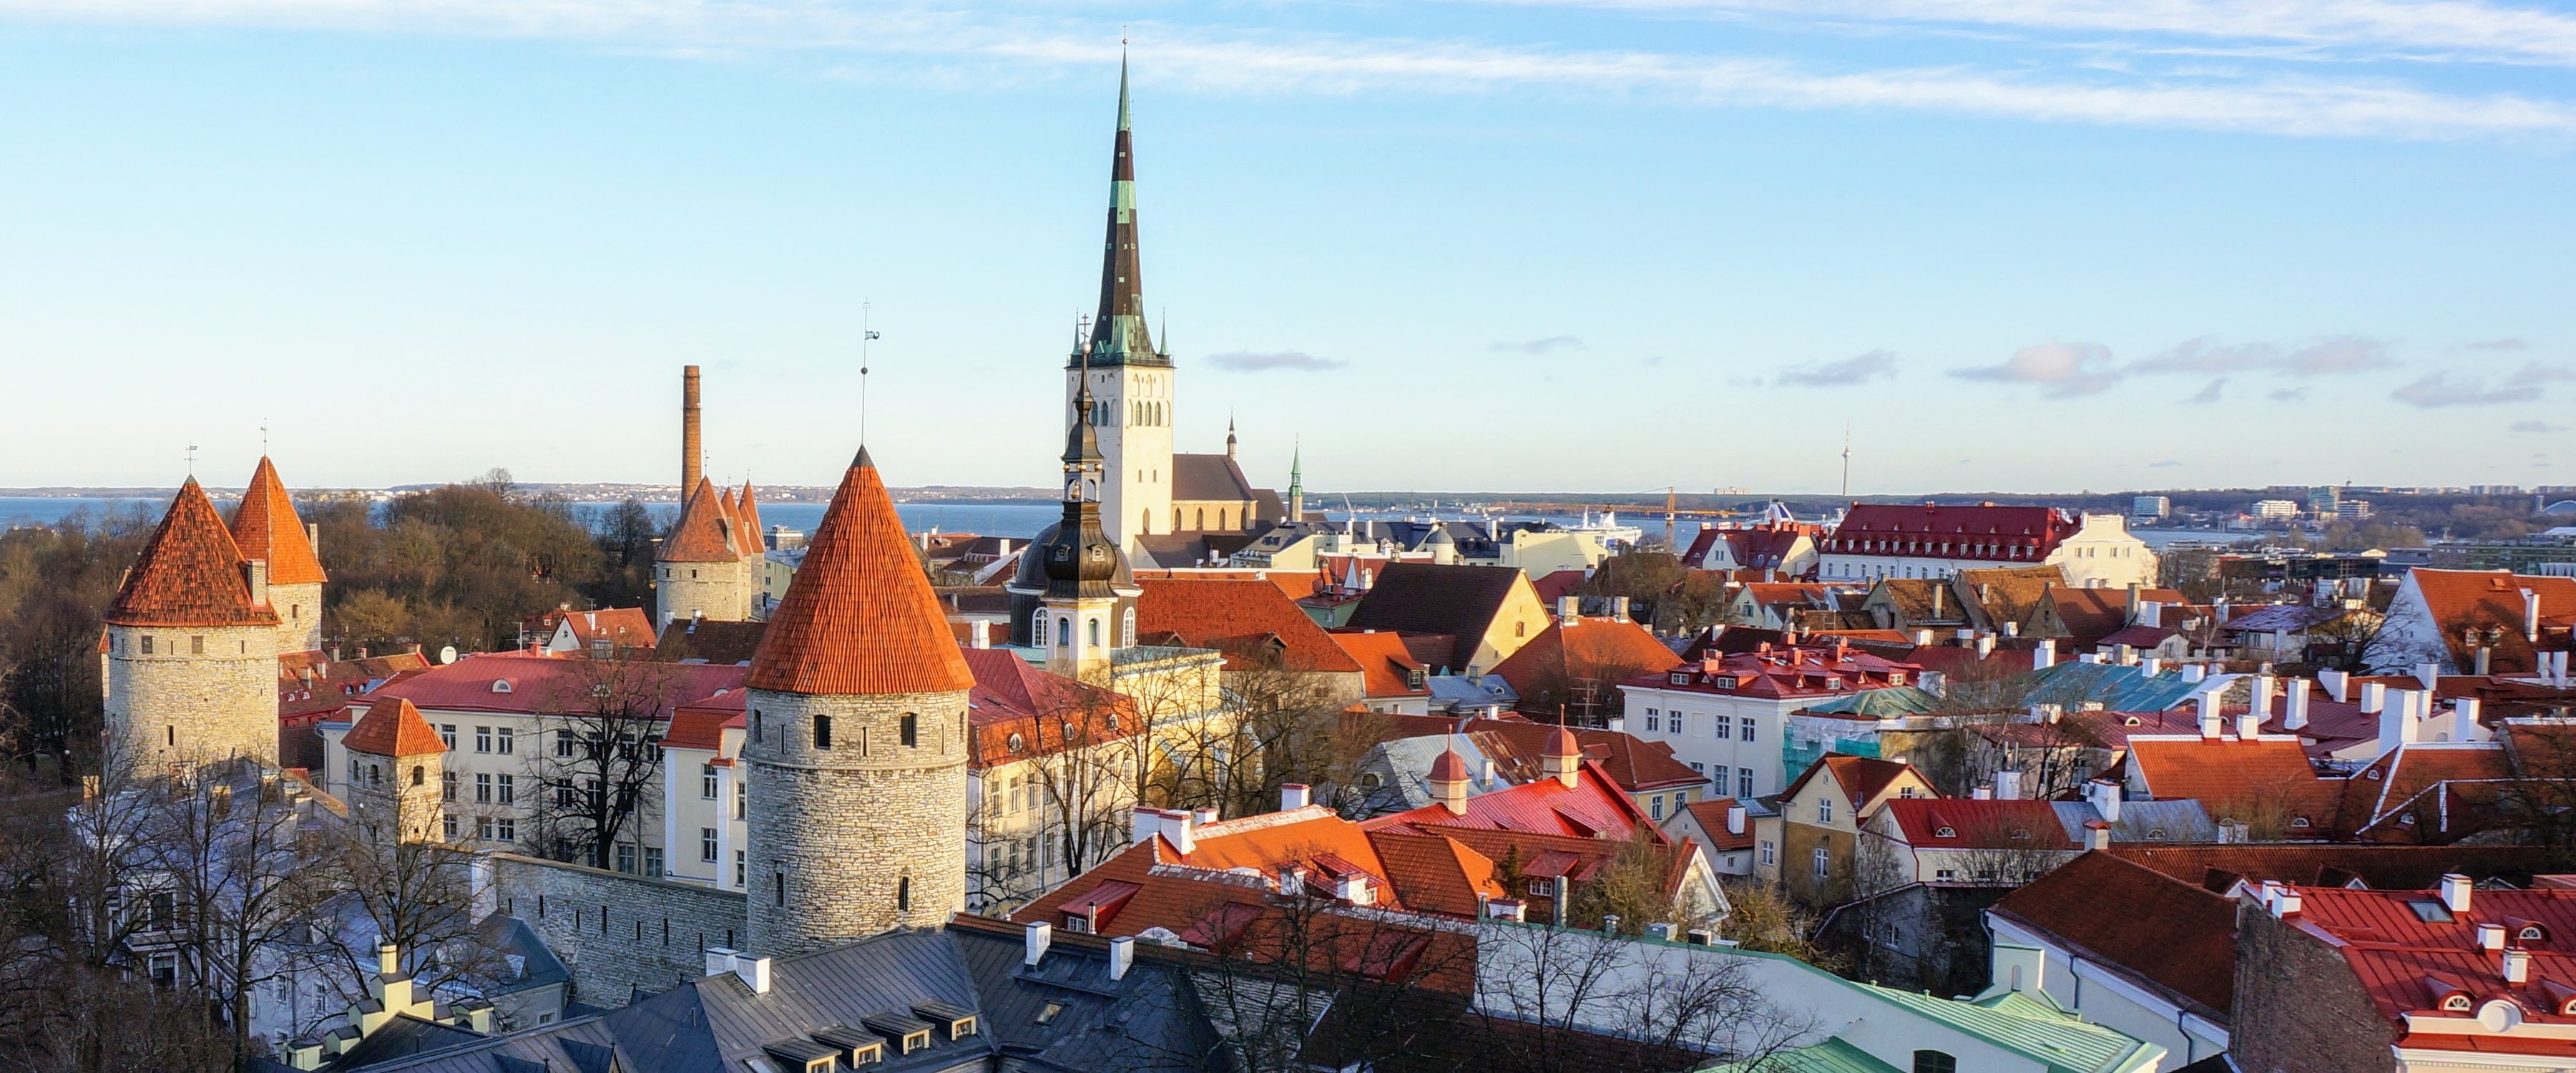 Foto av staden Tallinn